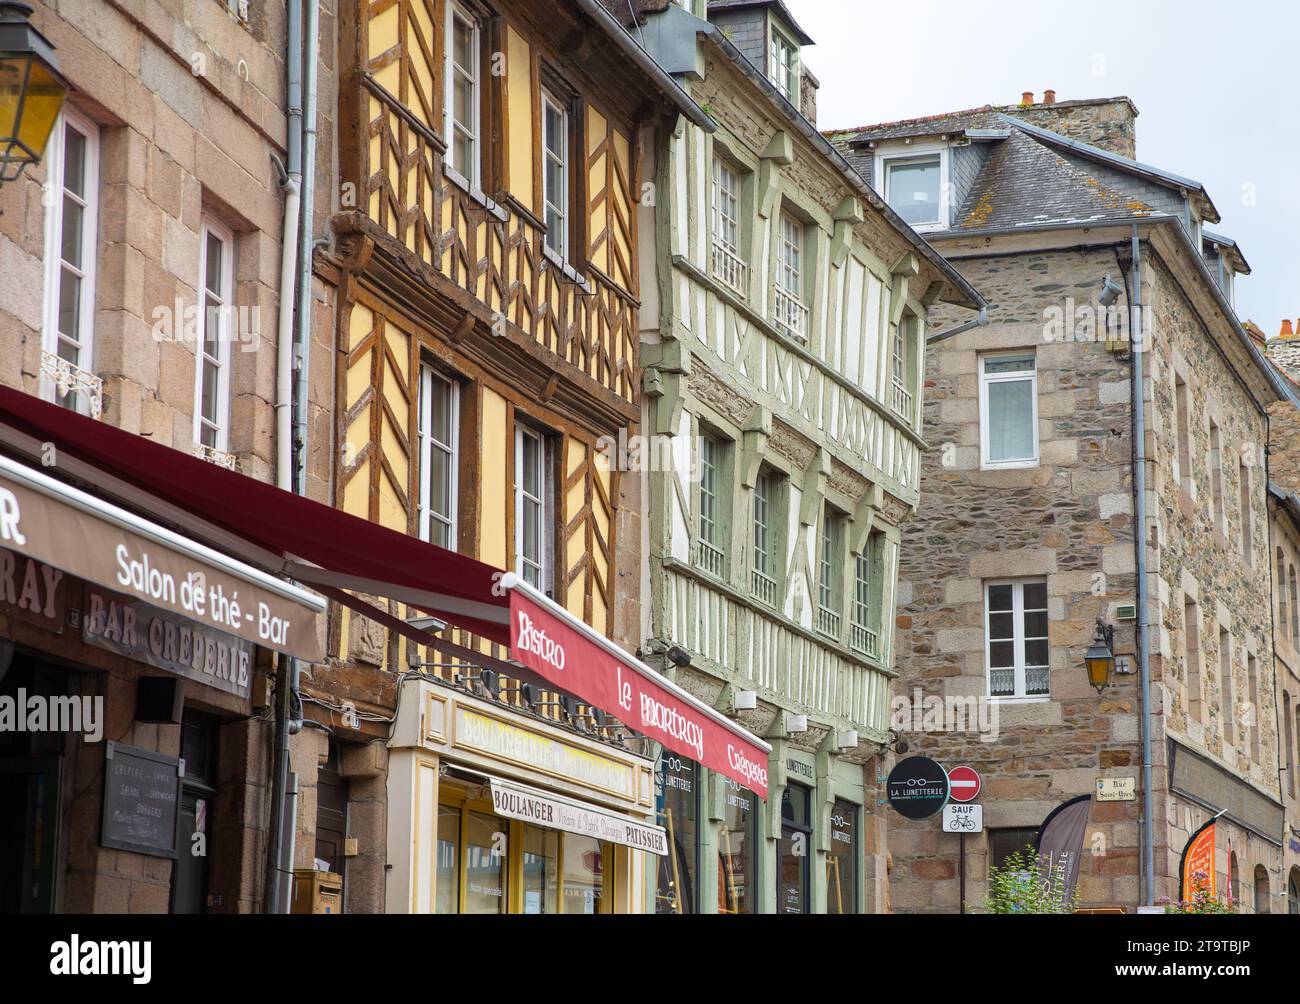 Strada tradizionale in pietra nel centro storico di Tréguier, Francia Foto Stock